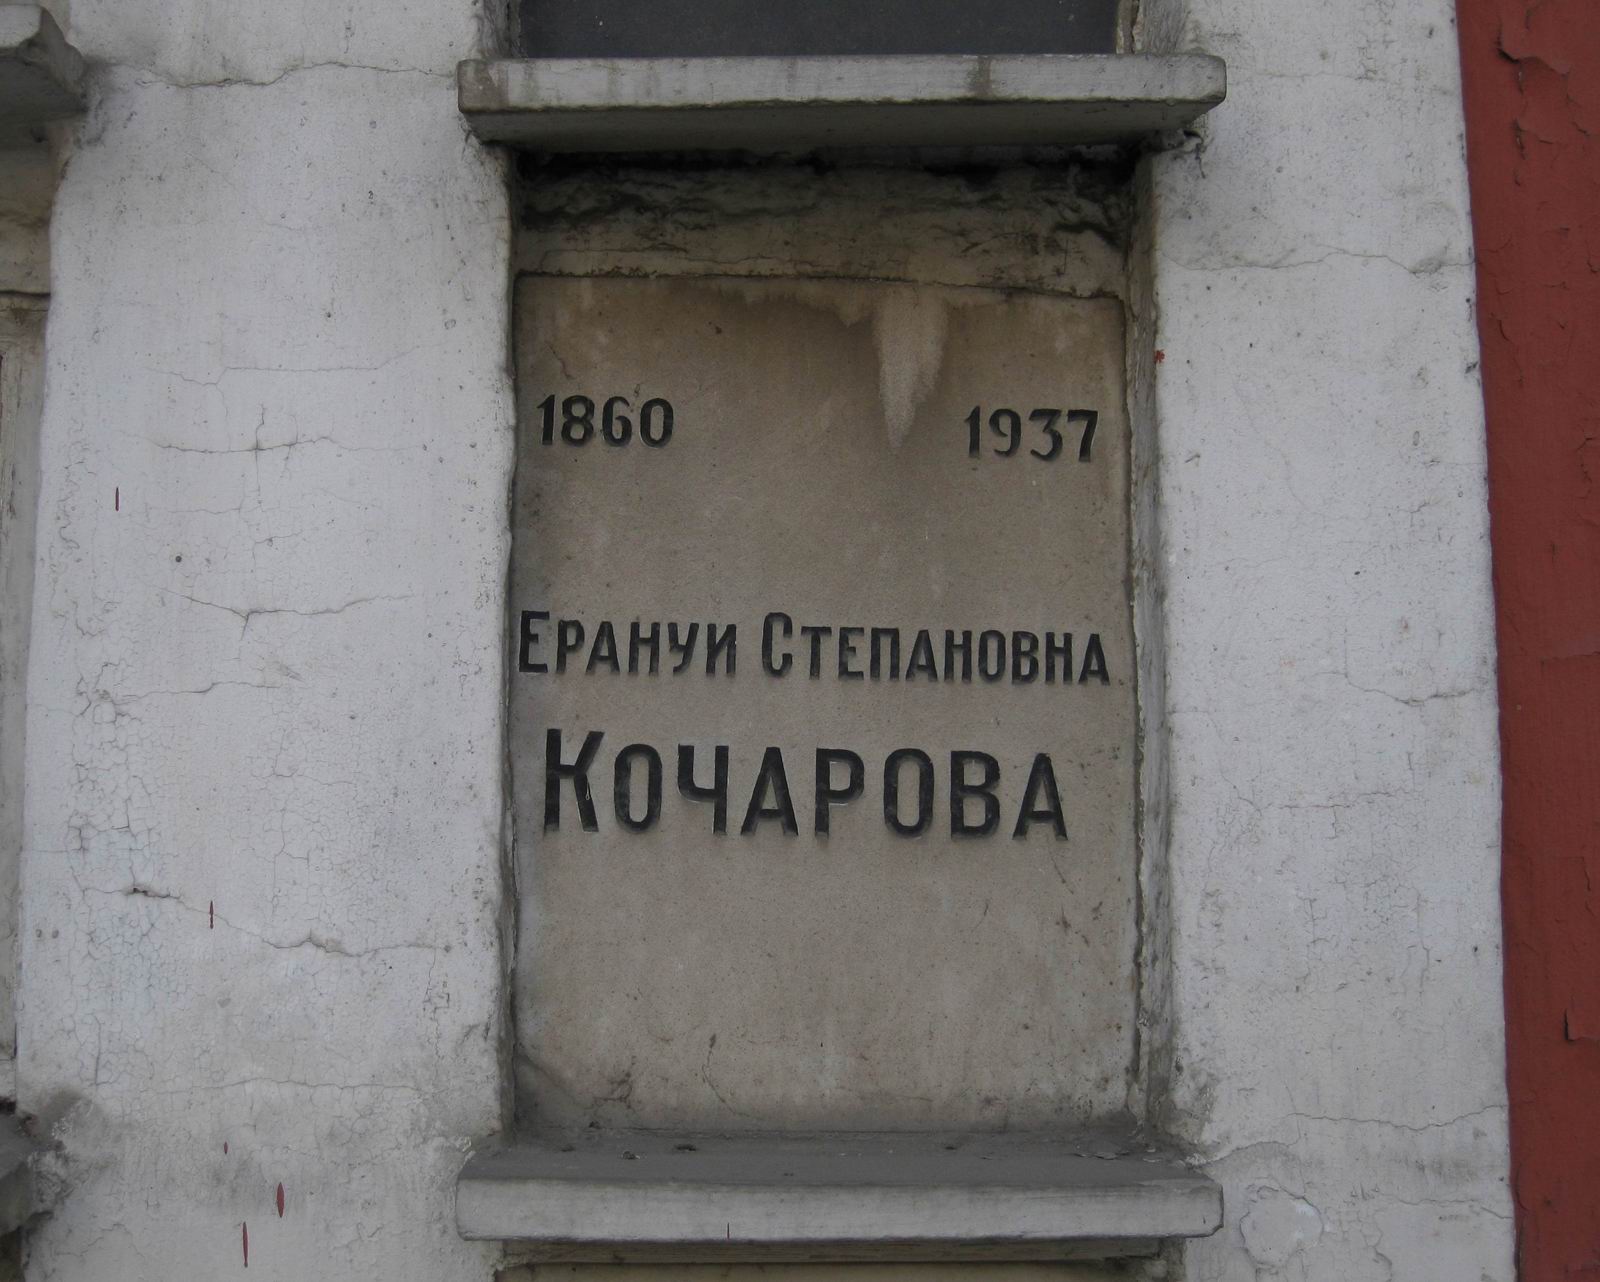 Плита на нише Кочарова Е.С. (1860-1937), на Новодевичьем кладбище (колумбарий [45]-5-2).